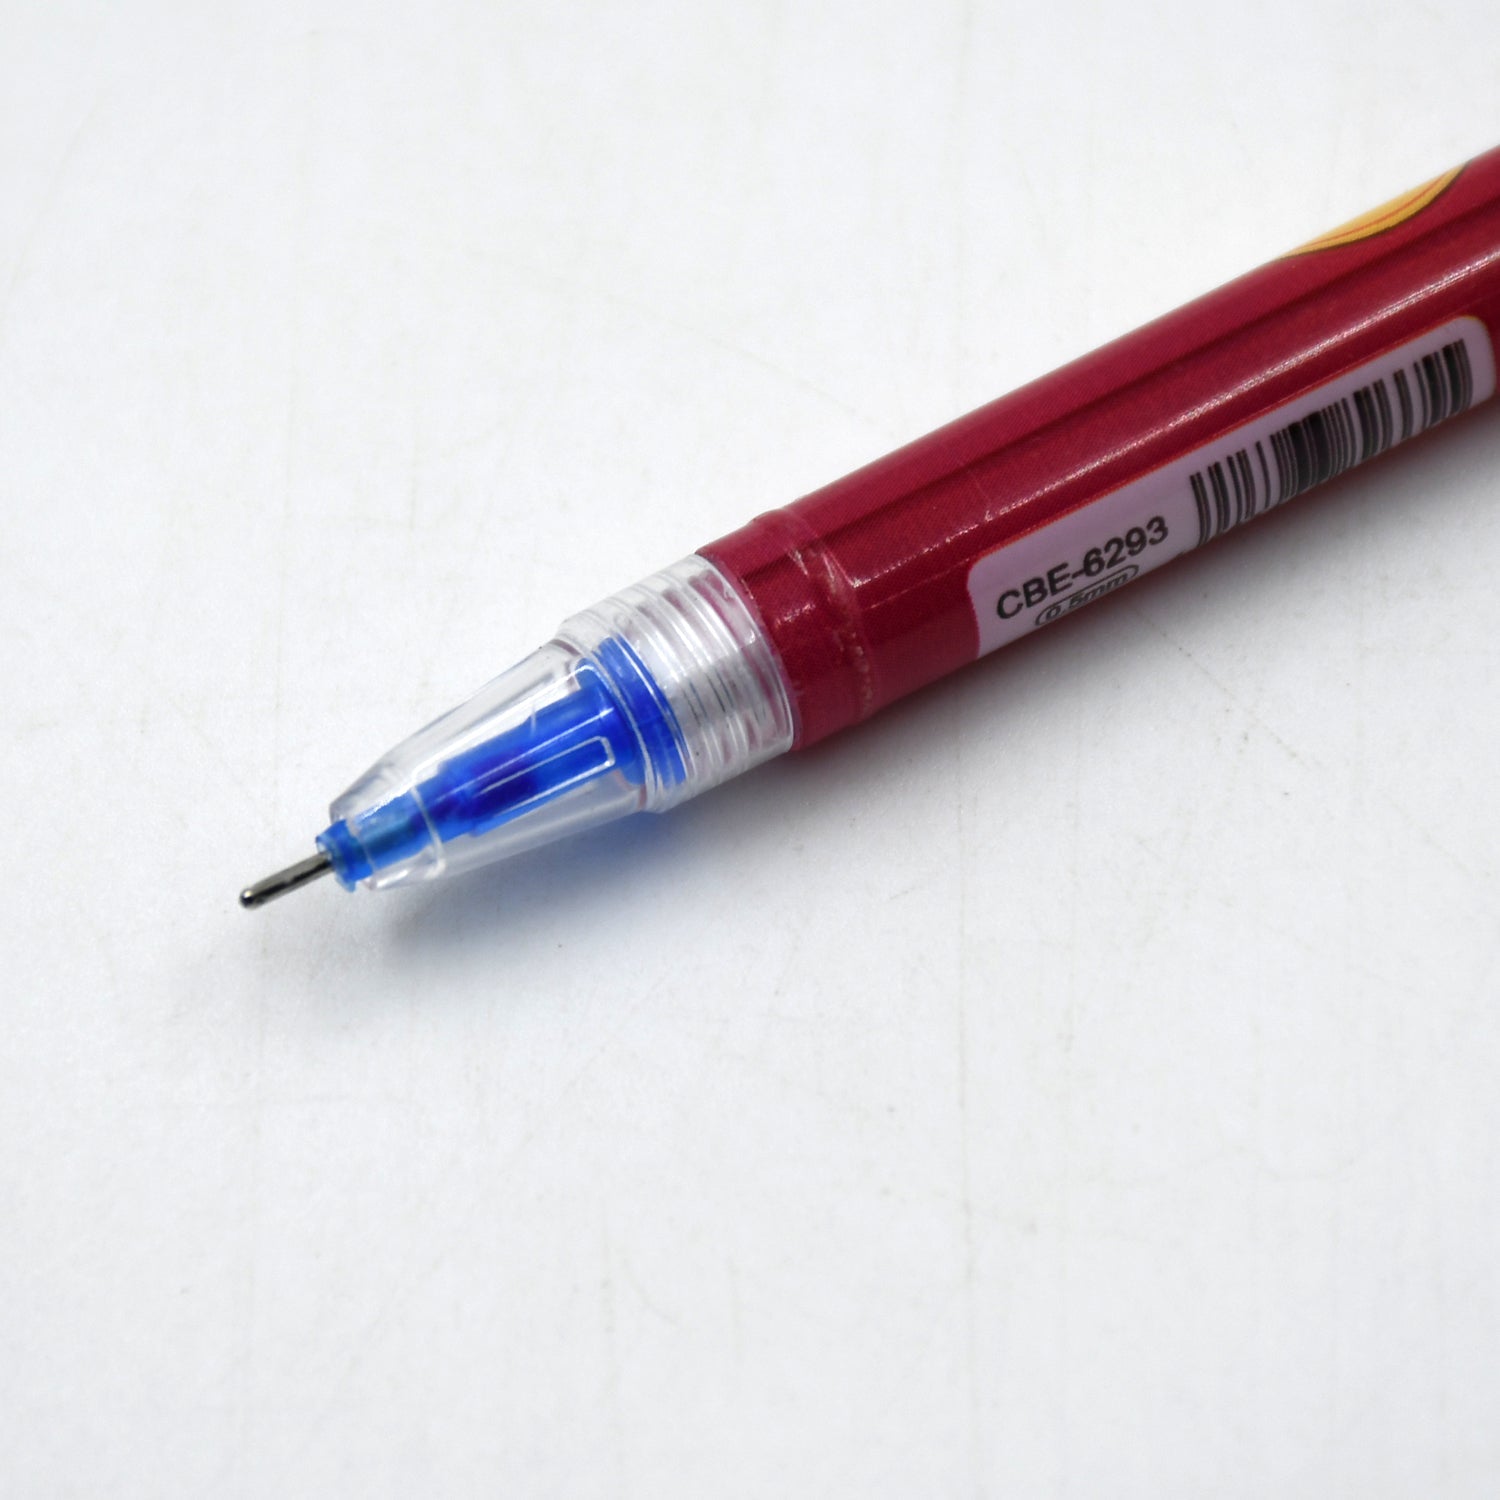 Fancy Pen Smooth Writing Pen Child Fancy Fun Pen For Home, Office & School Use